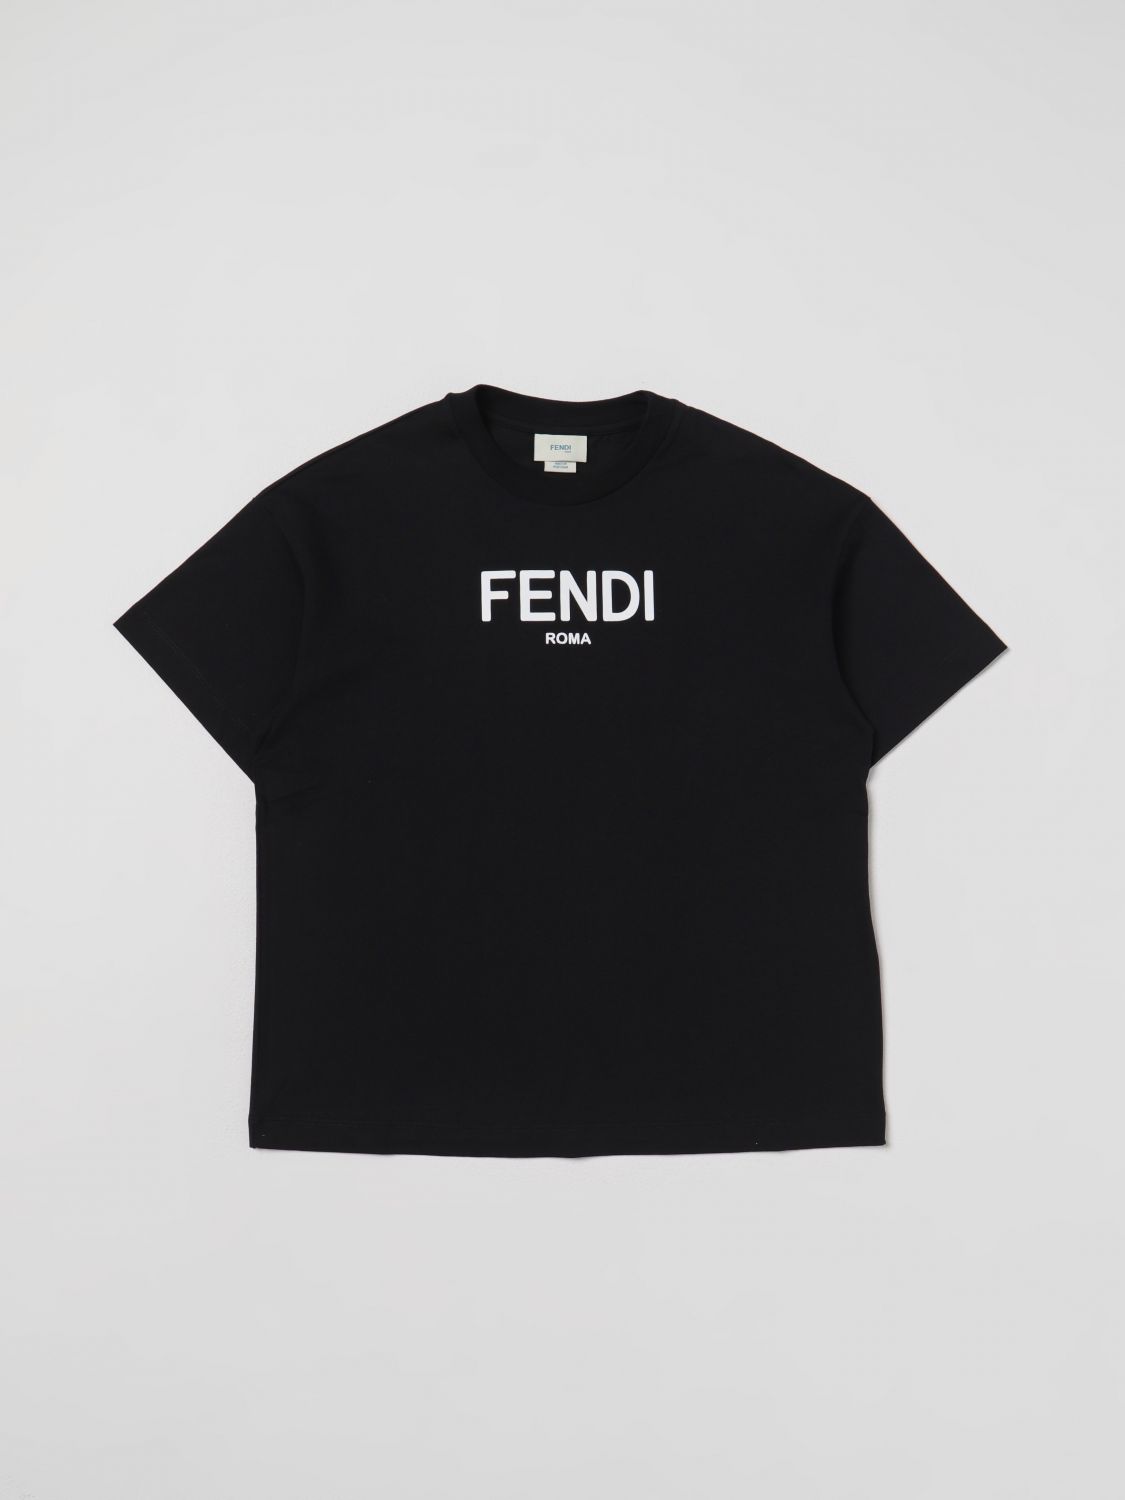 Fendi Kids' Jersey T-shirt In Black 1